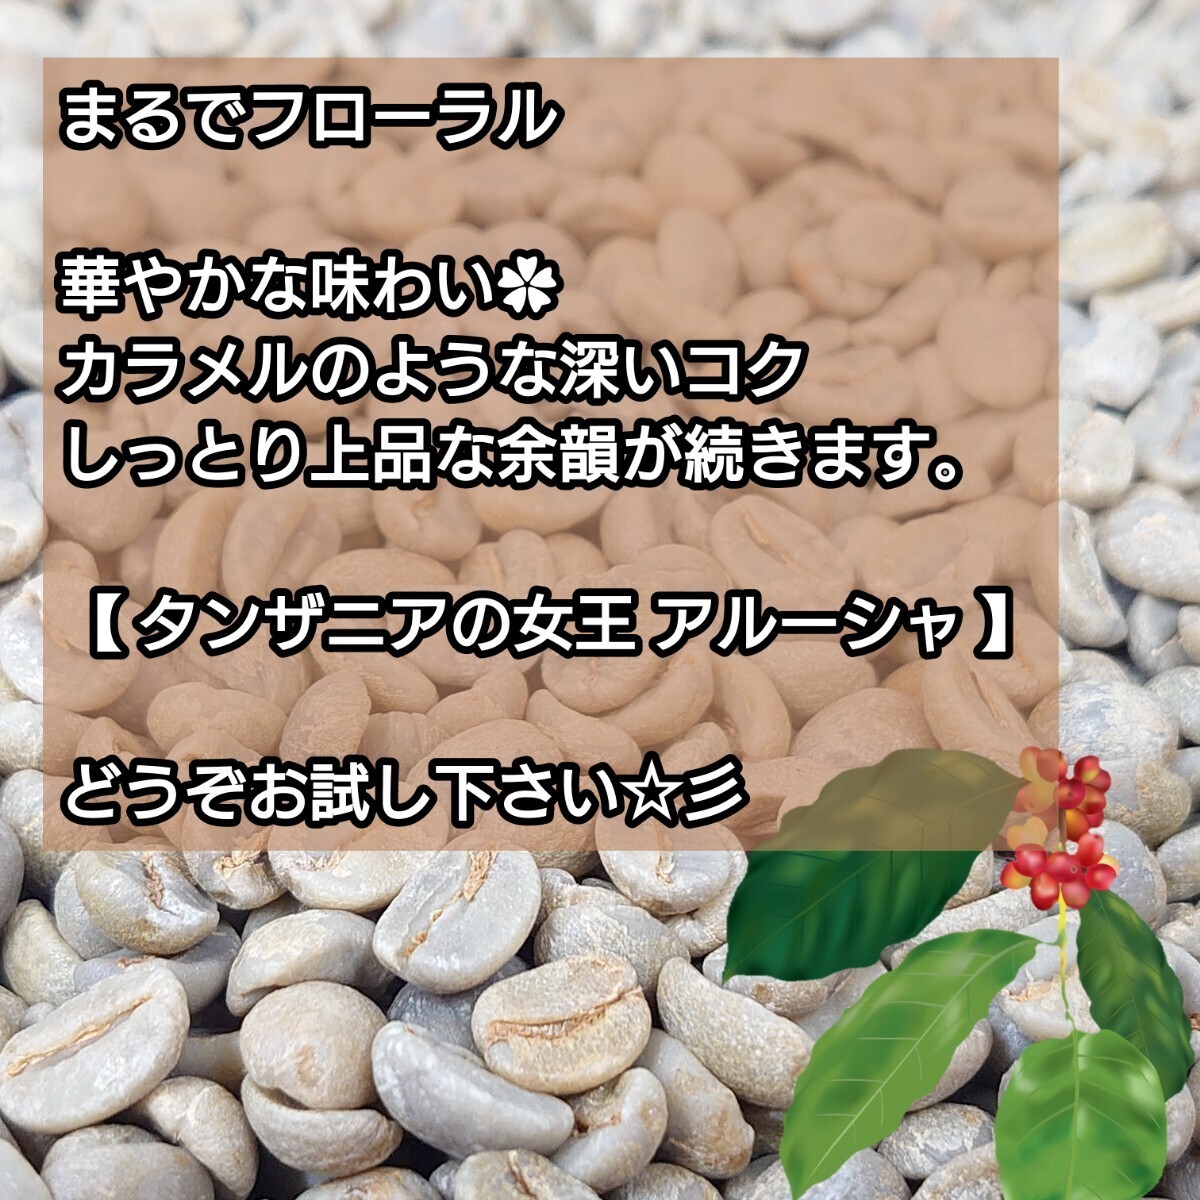 【 豆 】 タンザニア AA キリマンジャロ クイーンアルーシャ 生豆時 200g【84点】 スペシャルティ コーヒー 珈琲 自家焙煎 コーヒー豆